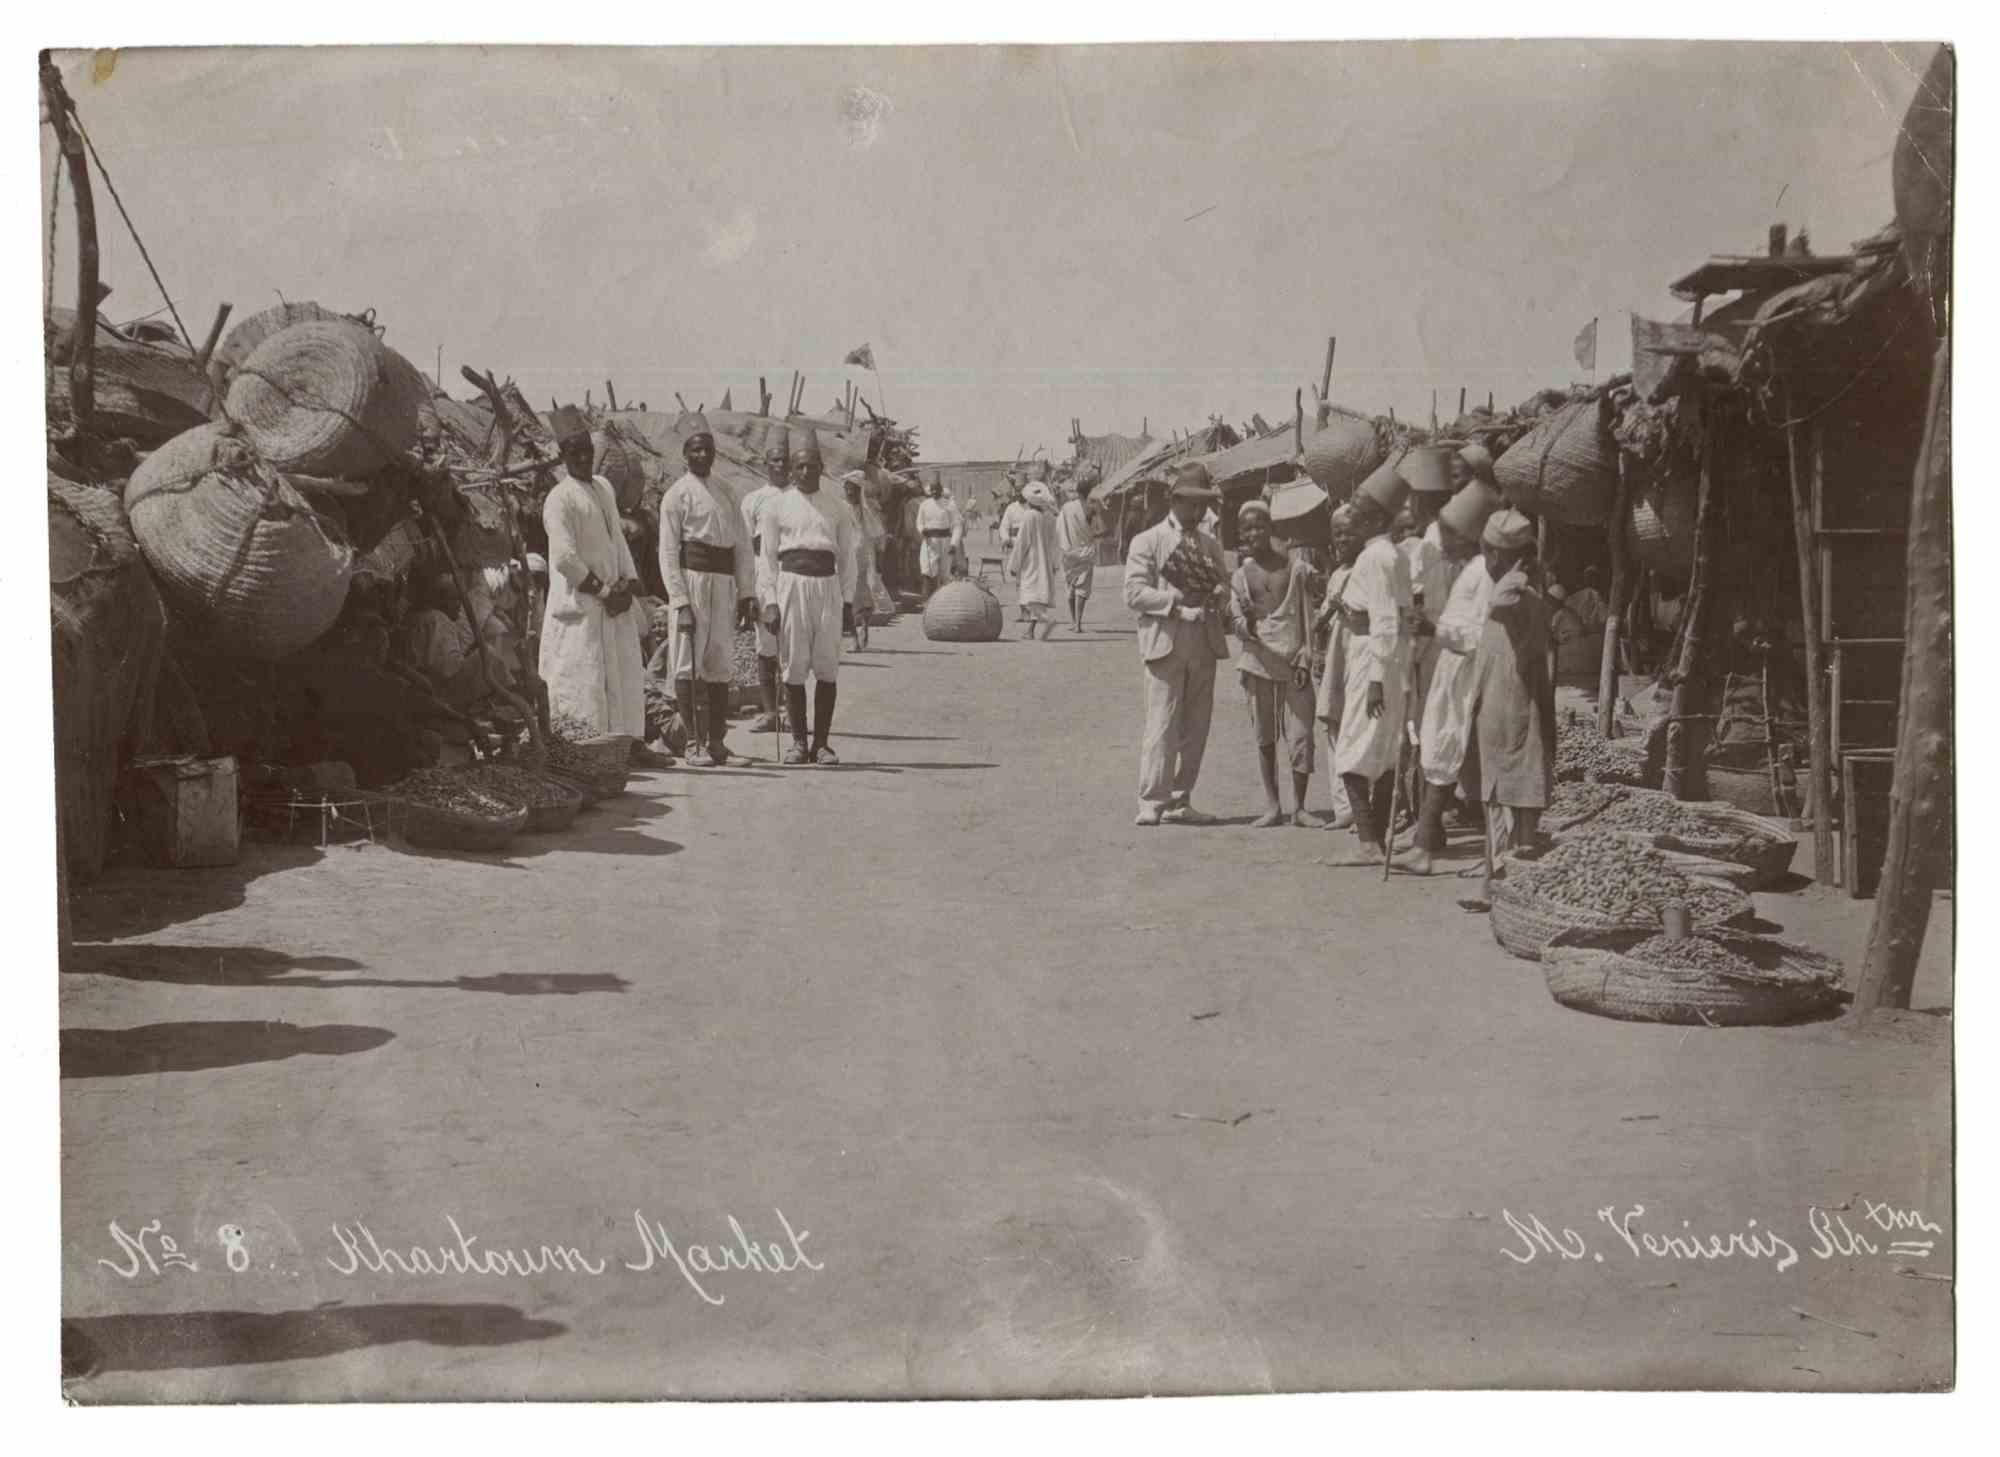 Unknown Portrait Photograph - Khartoum Market - Vintage Photo - Early 20th Century